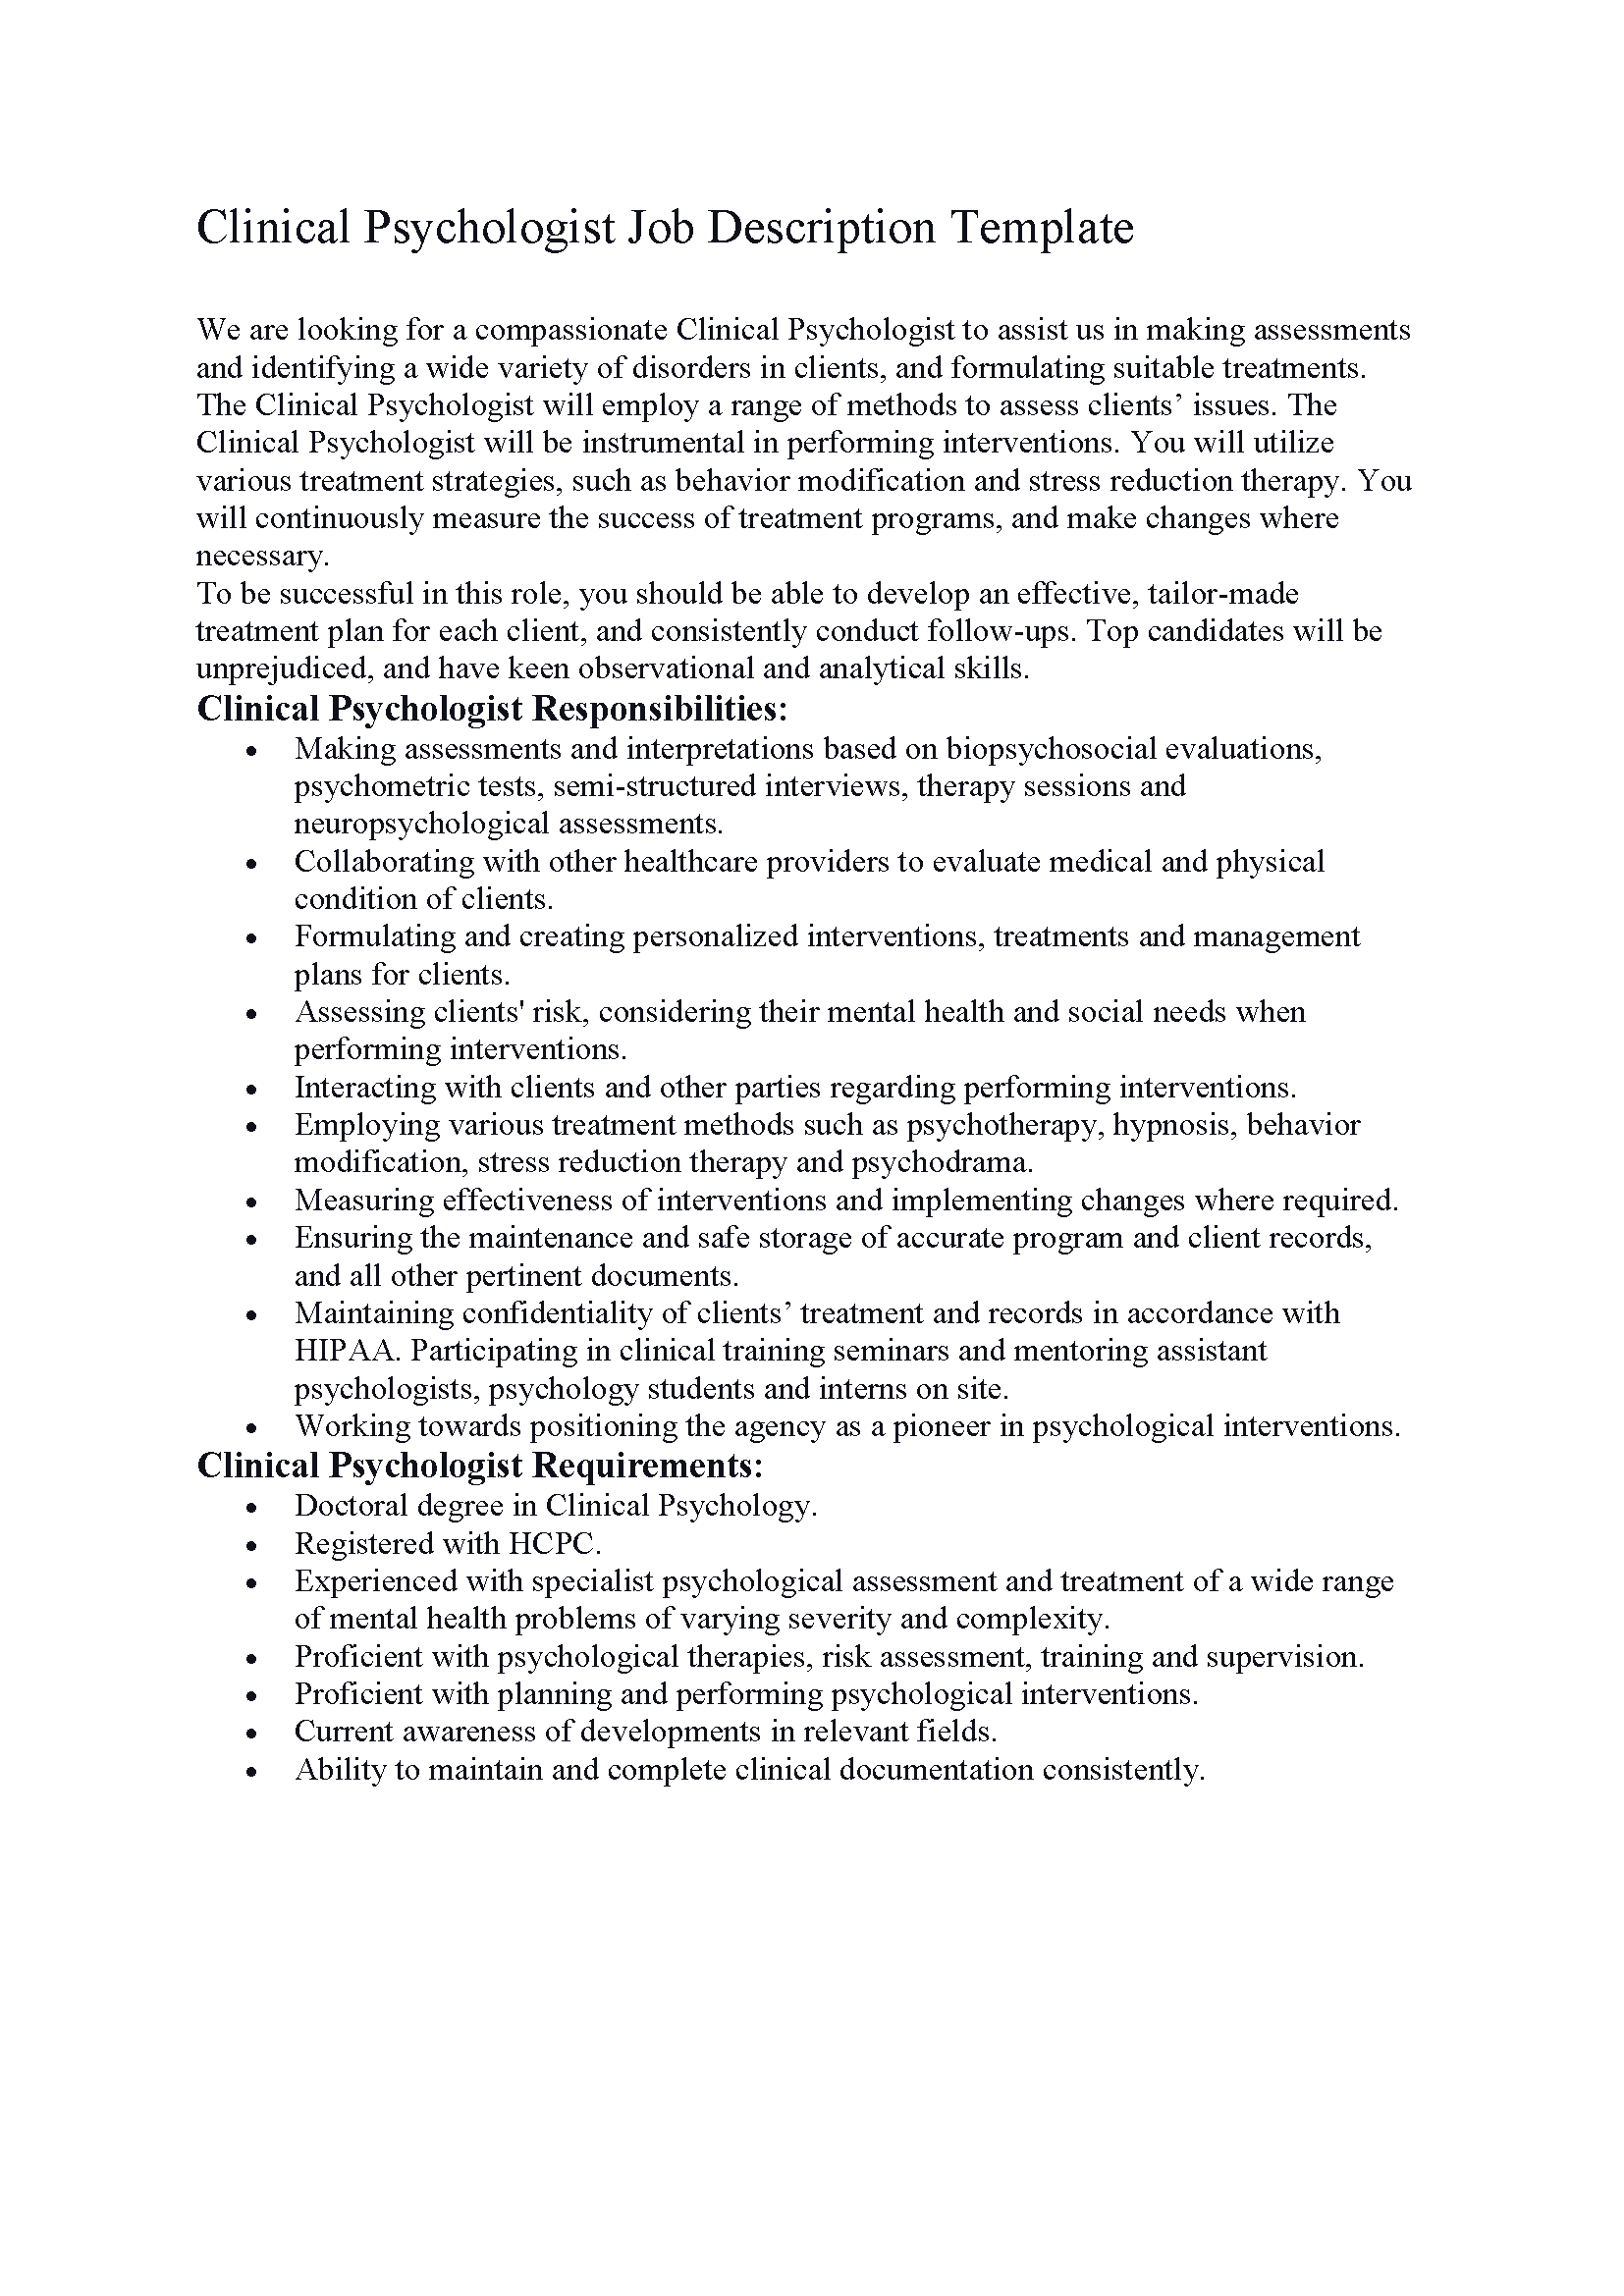 Clinical Psychologist Job Description Template